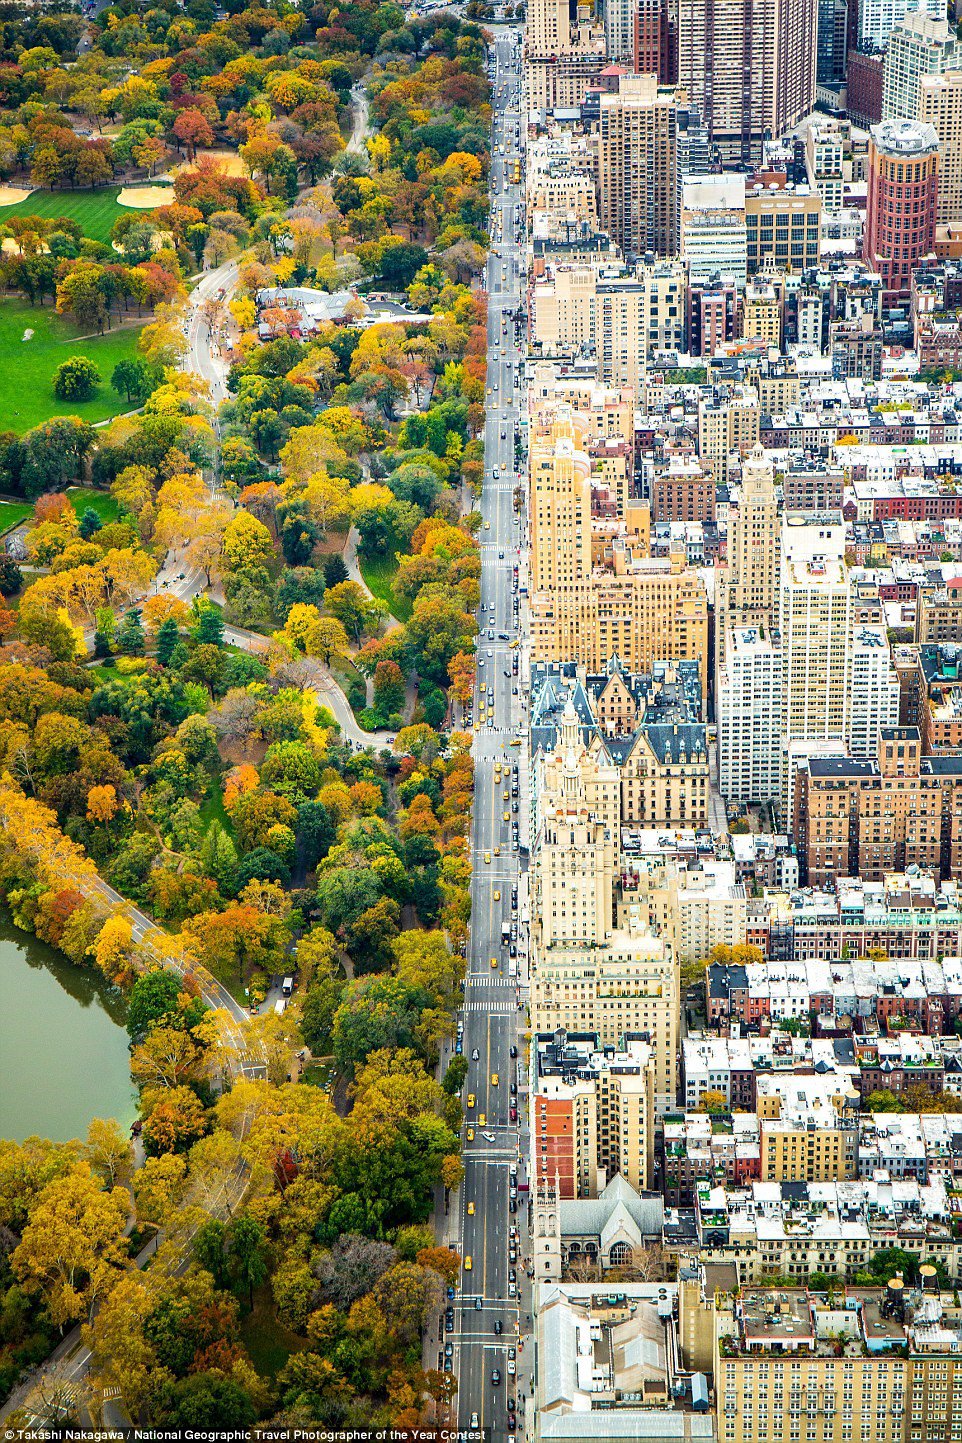 Nhìn từ trực thăng, công viên trung tâm và những tòa nhà của thành phố New York (Mỹ) như chia làm hai thế giới riêng biệt. (Ảnh: Kathleen Dolmatch).